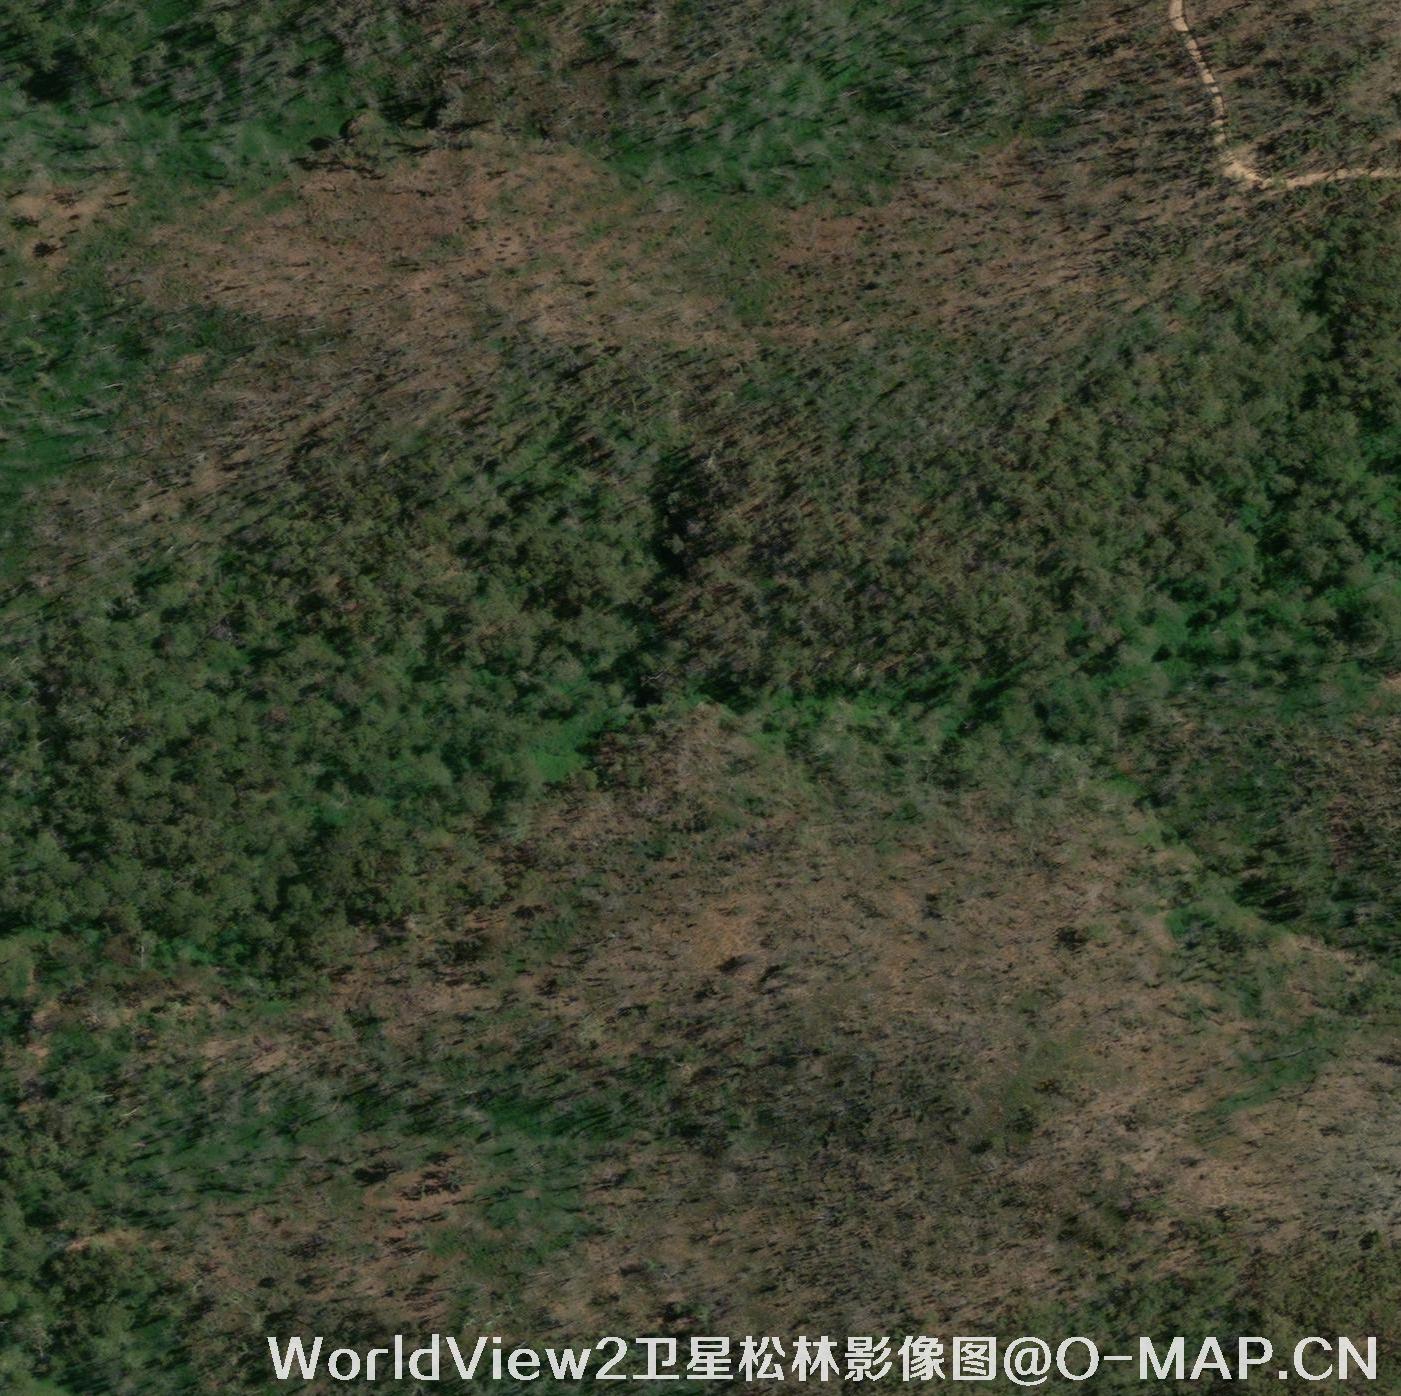 WorldView2卫星拍摄的0.5米分辨率卫星图